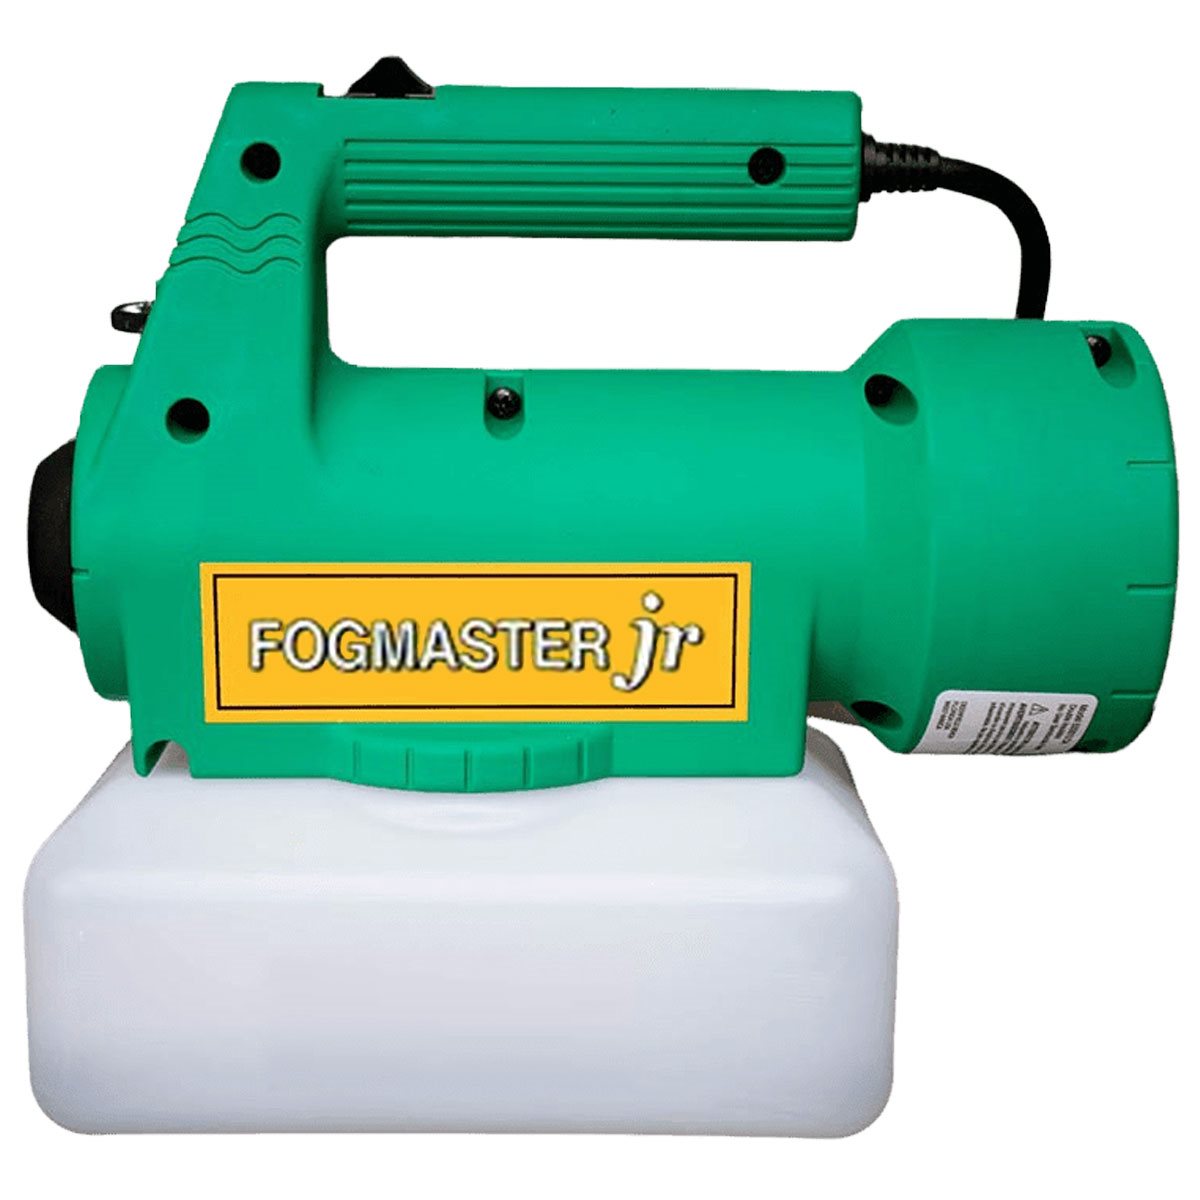 Product Image:Fogmaster Jr Portable Fogger Humidifier